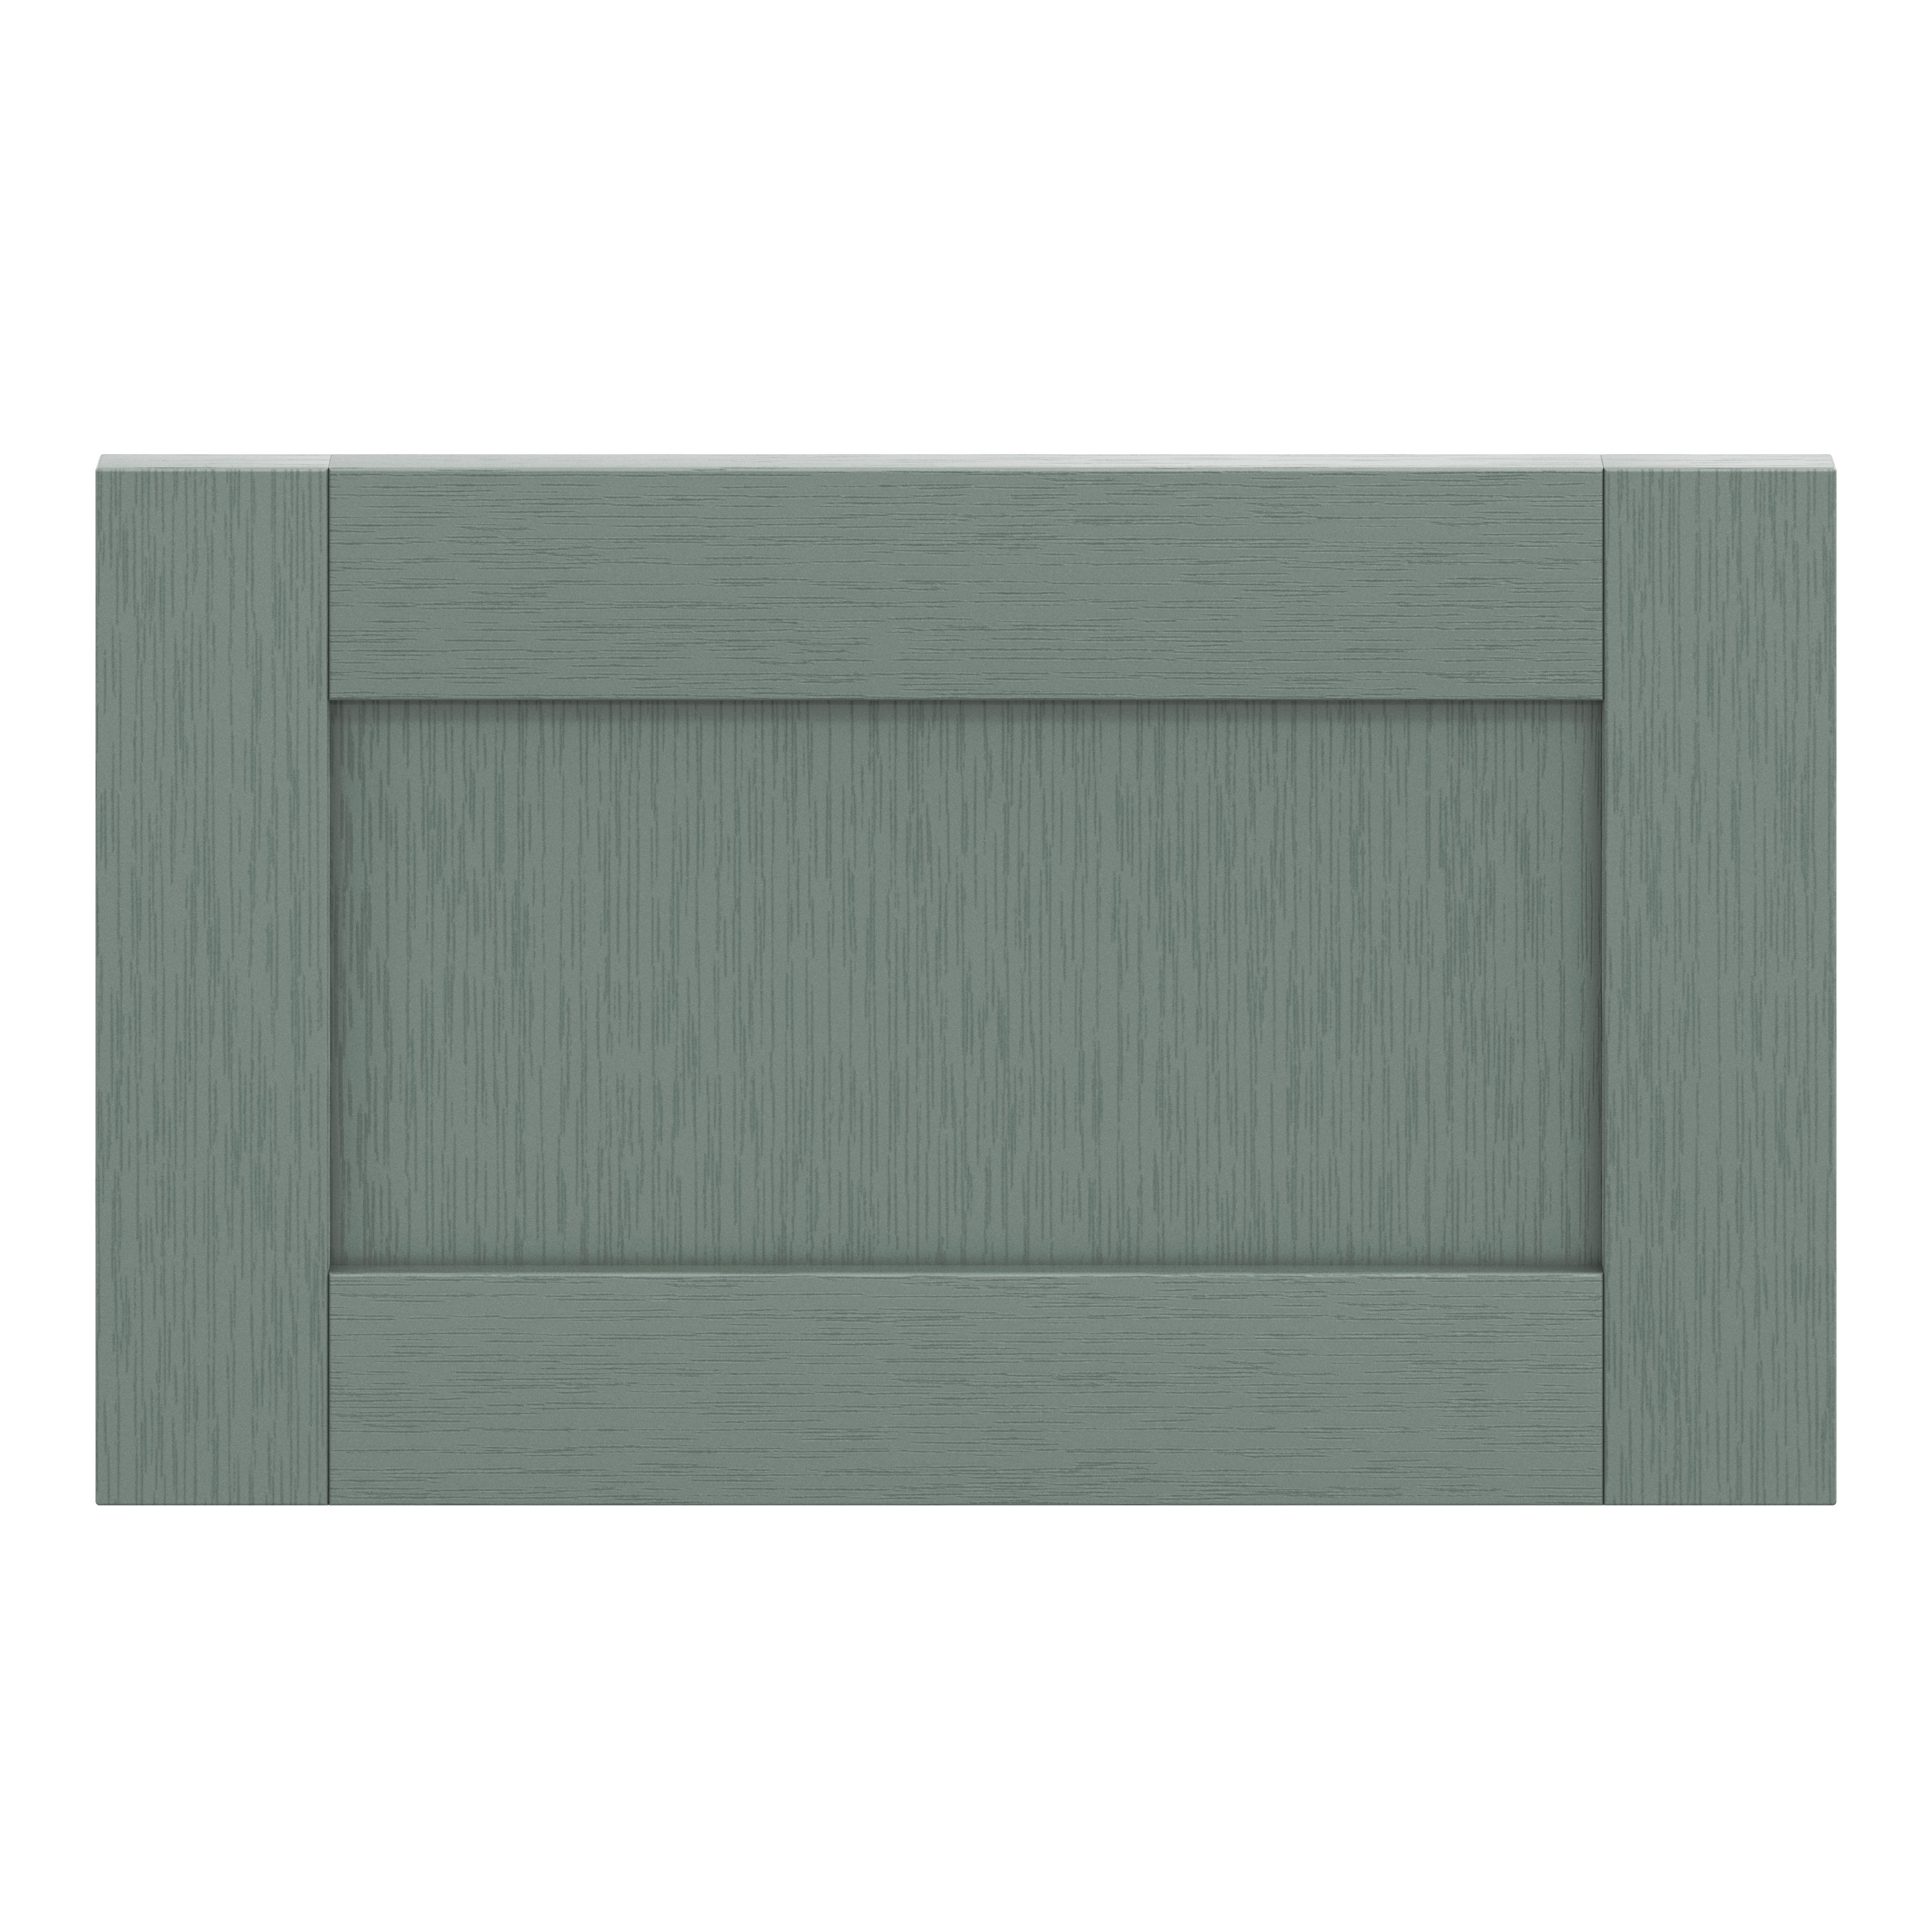 GoodHome Alpinia Matt green wood effect Drawer front, bridging door & bi fold door, (W)600mm (H)356mm (T)18mm